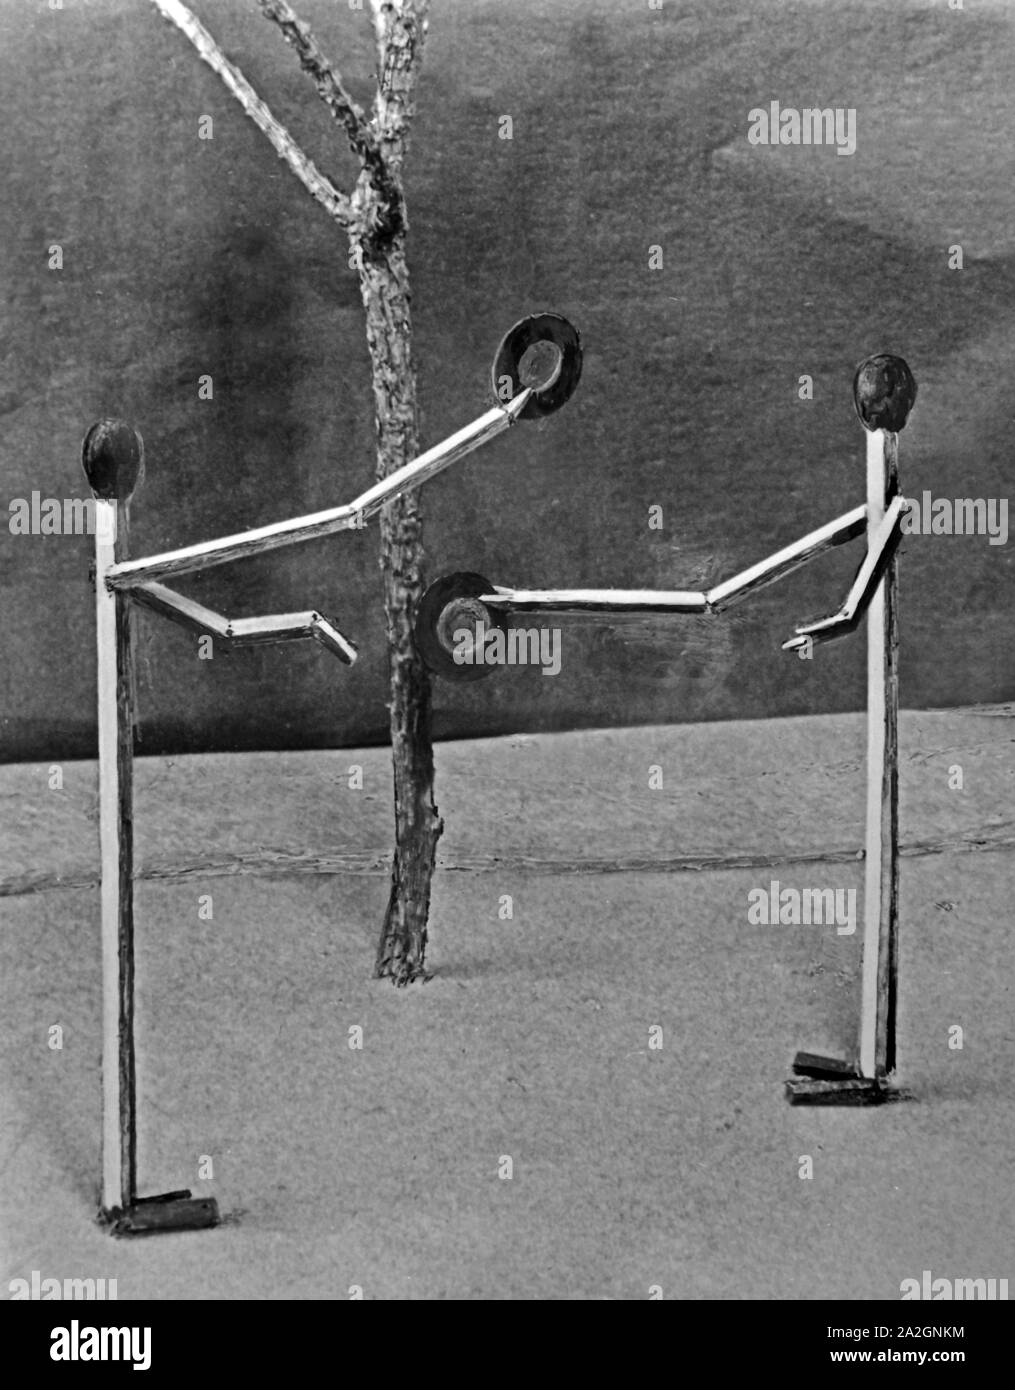 Papiermännchen-Szenerie: Streichholzmännchen lüften den Hut zur Begrüßung, Deutschland 1930er Jahre. Finger puppet scenarios: matches people lifting their hats, Germany 1930s. Stock Photo